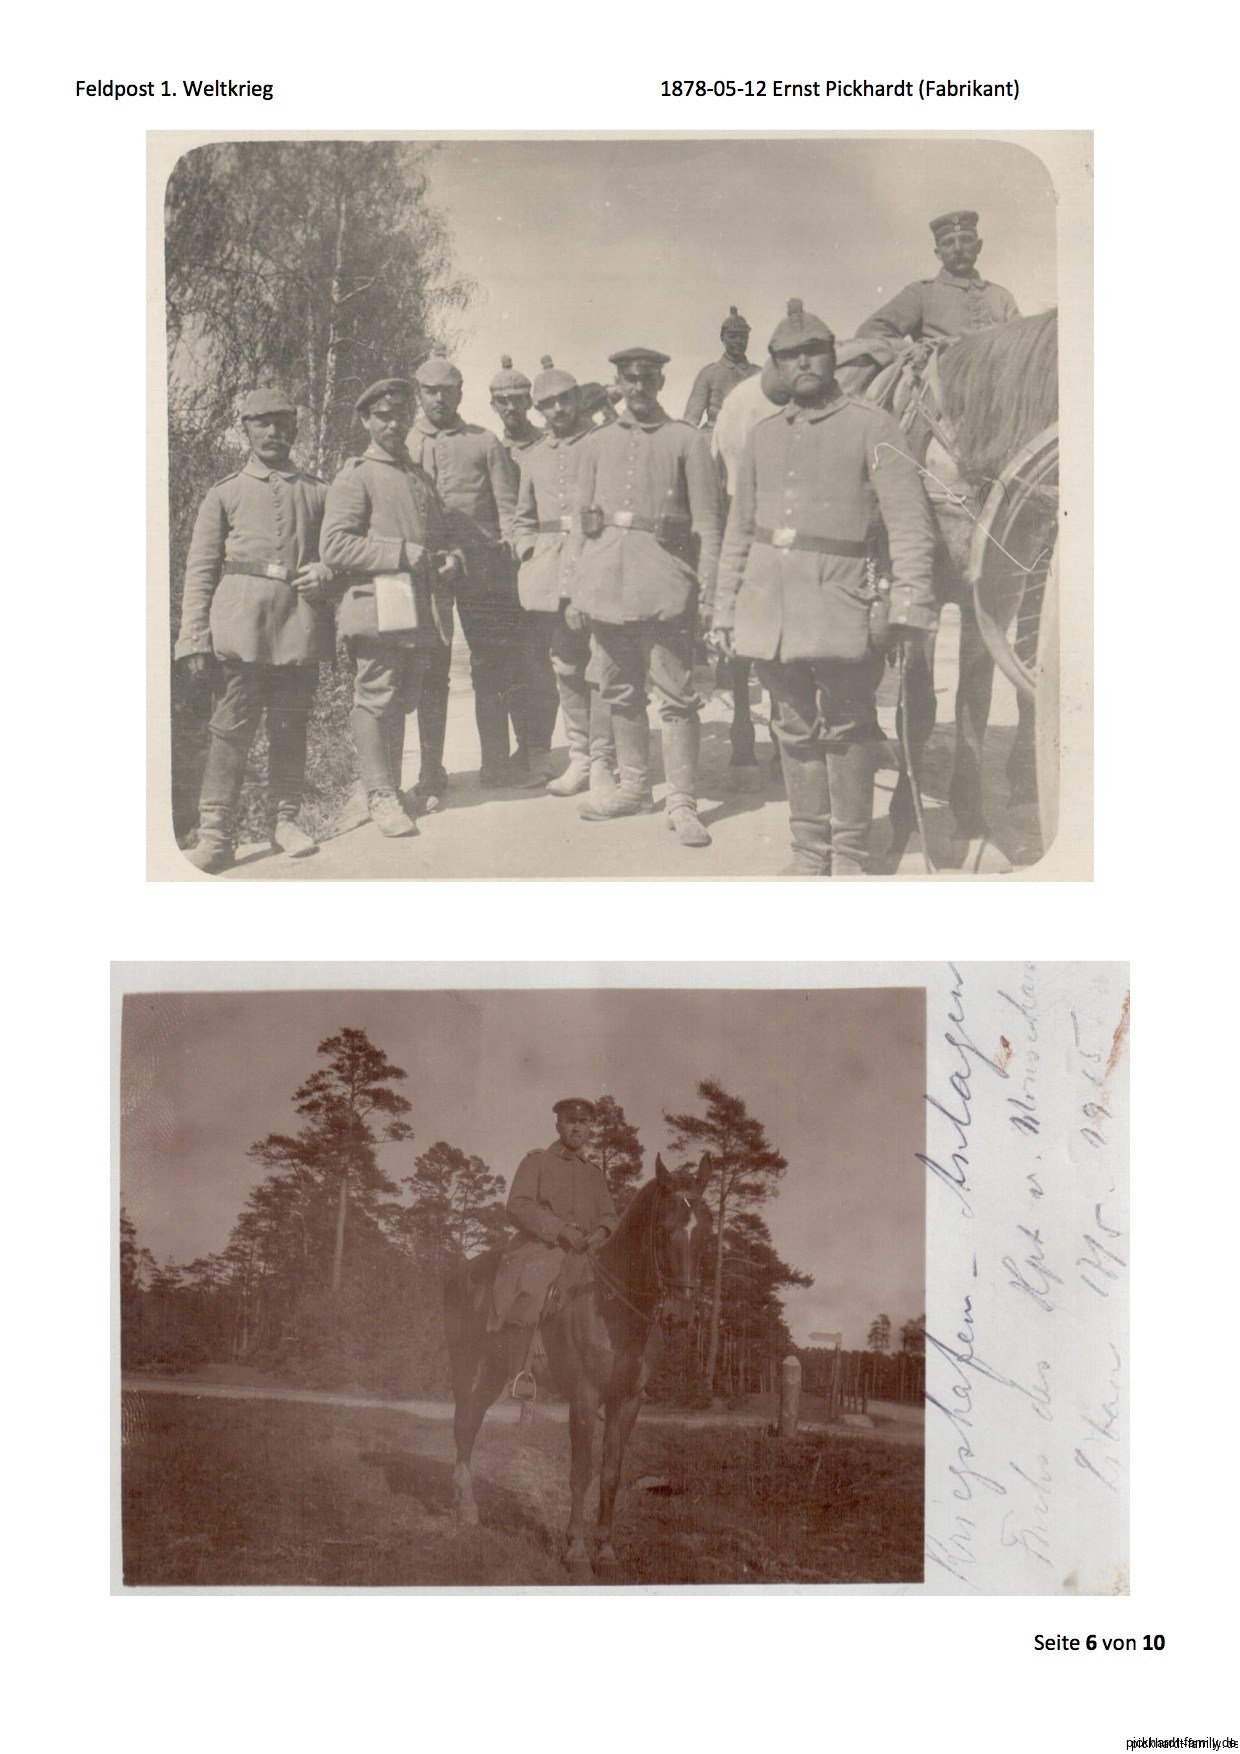 1914 Feldpost von Ernst Pickardt als Einjährig-Freiwilliger in Russland3